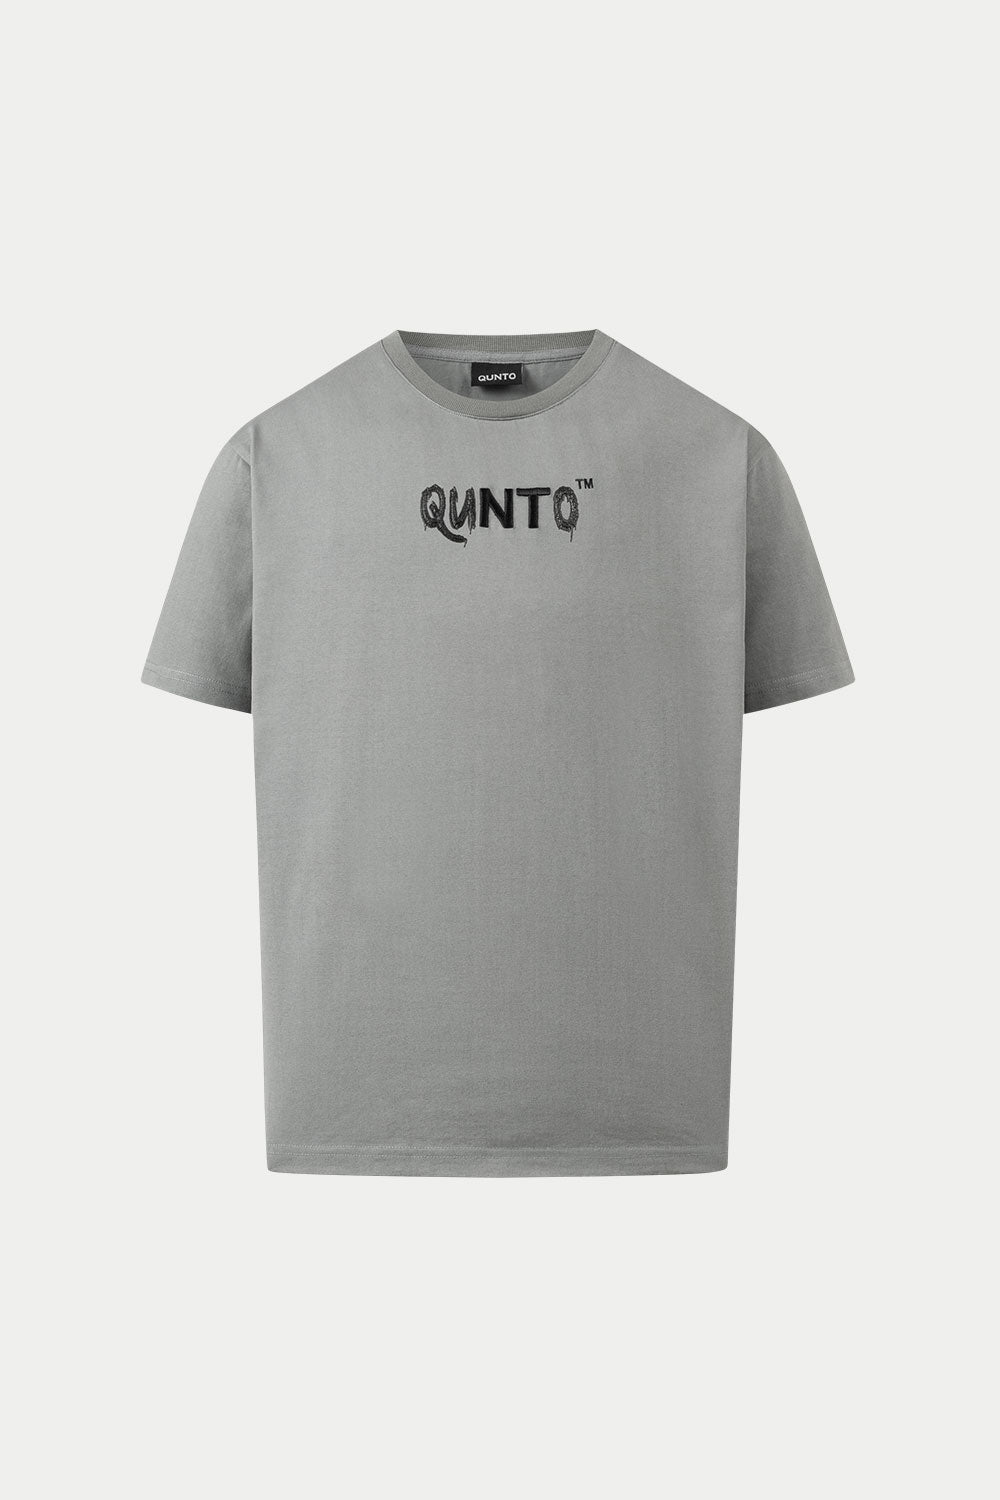 Buy Quttos Grey Solid Cotton Blend T-shirt Bra For Women (QT-BR